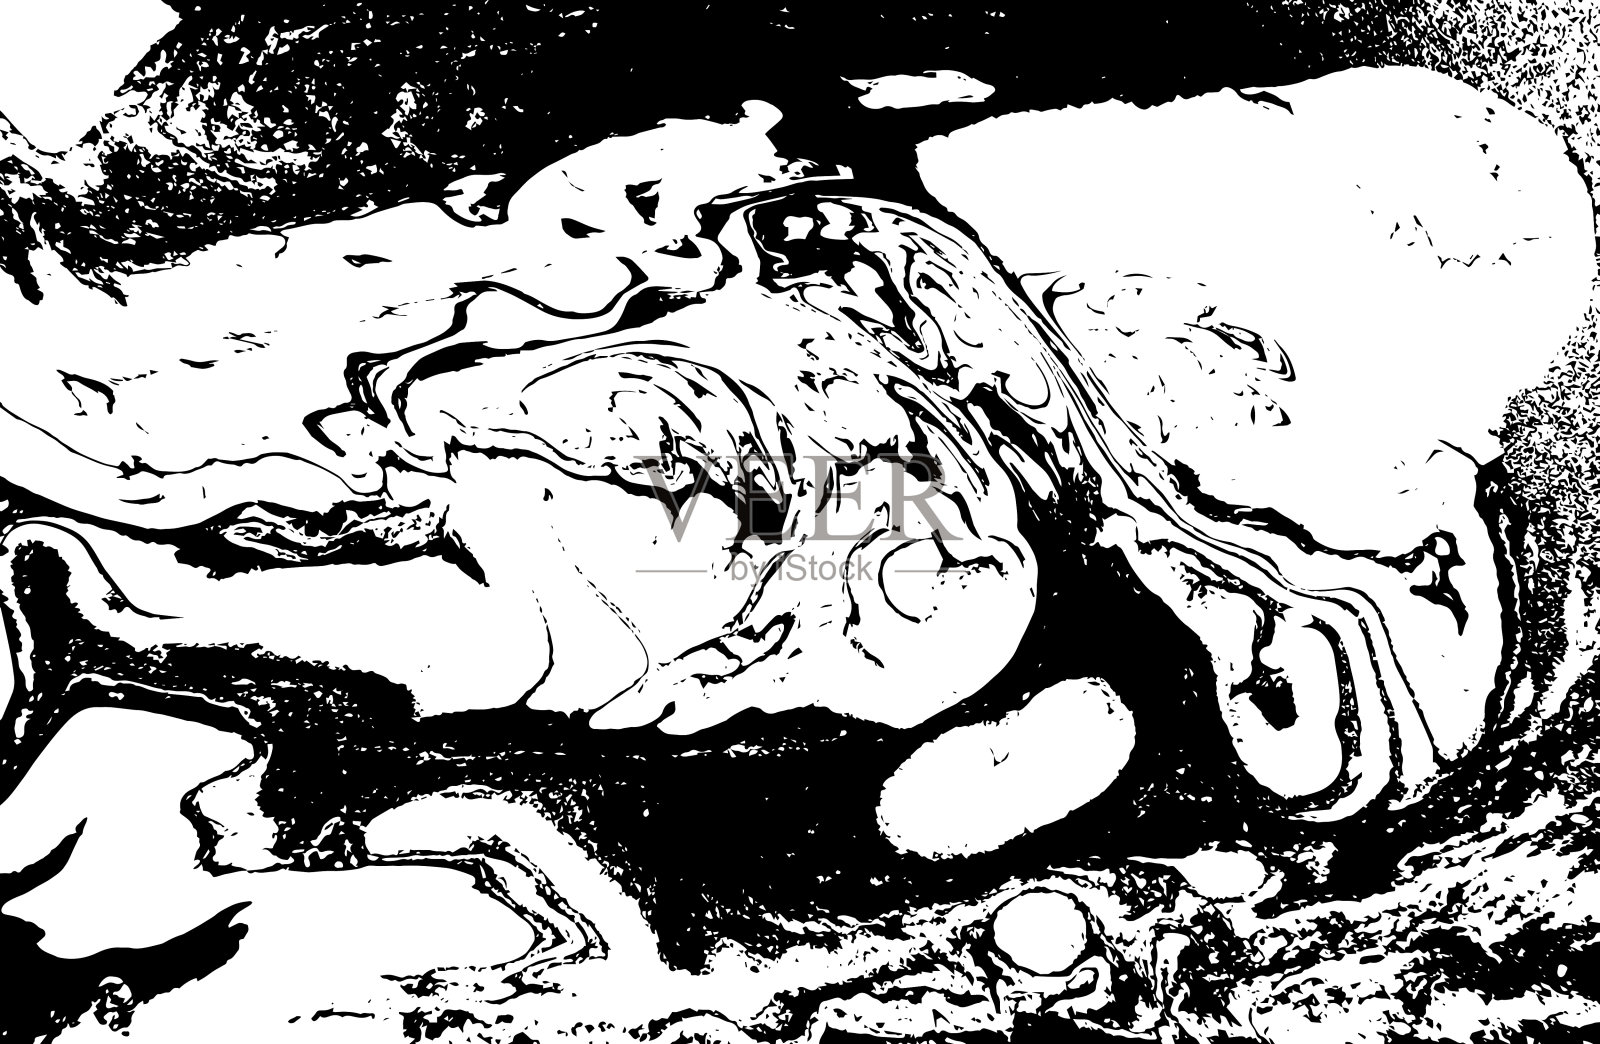 黑色和白色液体质地。水彩手绘大理石花纹插图。摘要向量背景。黑白大理石模式。插画图片素材